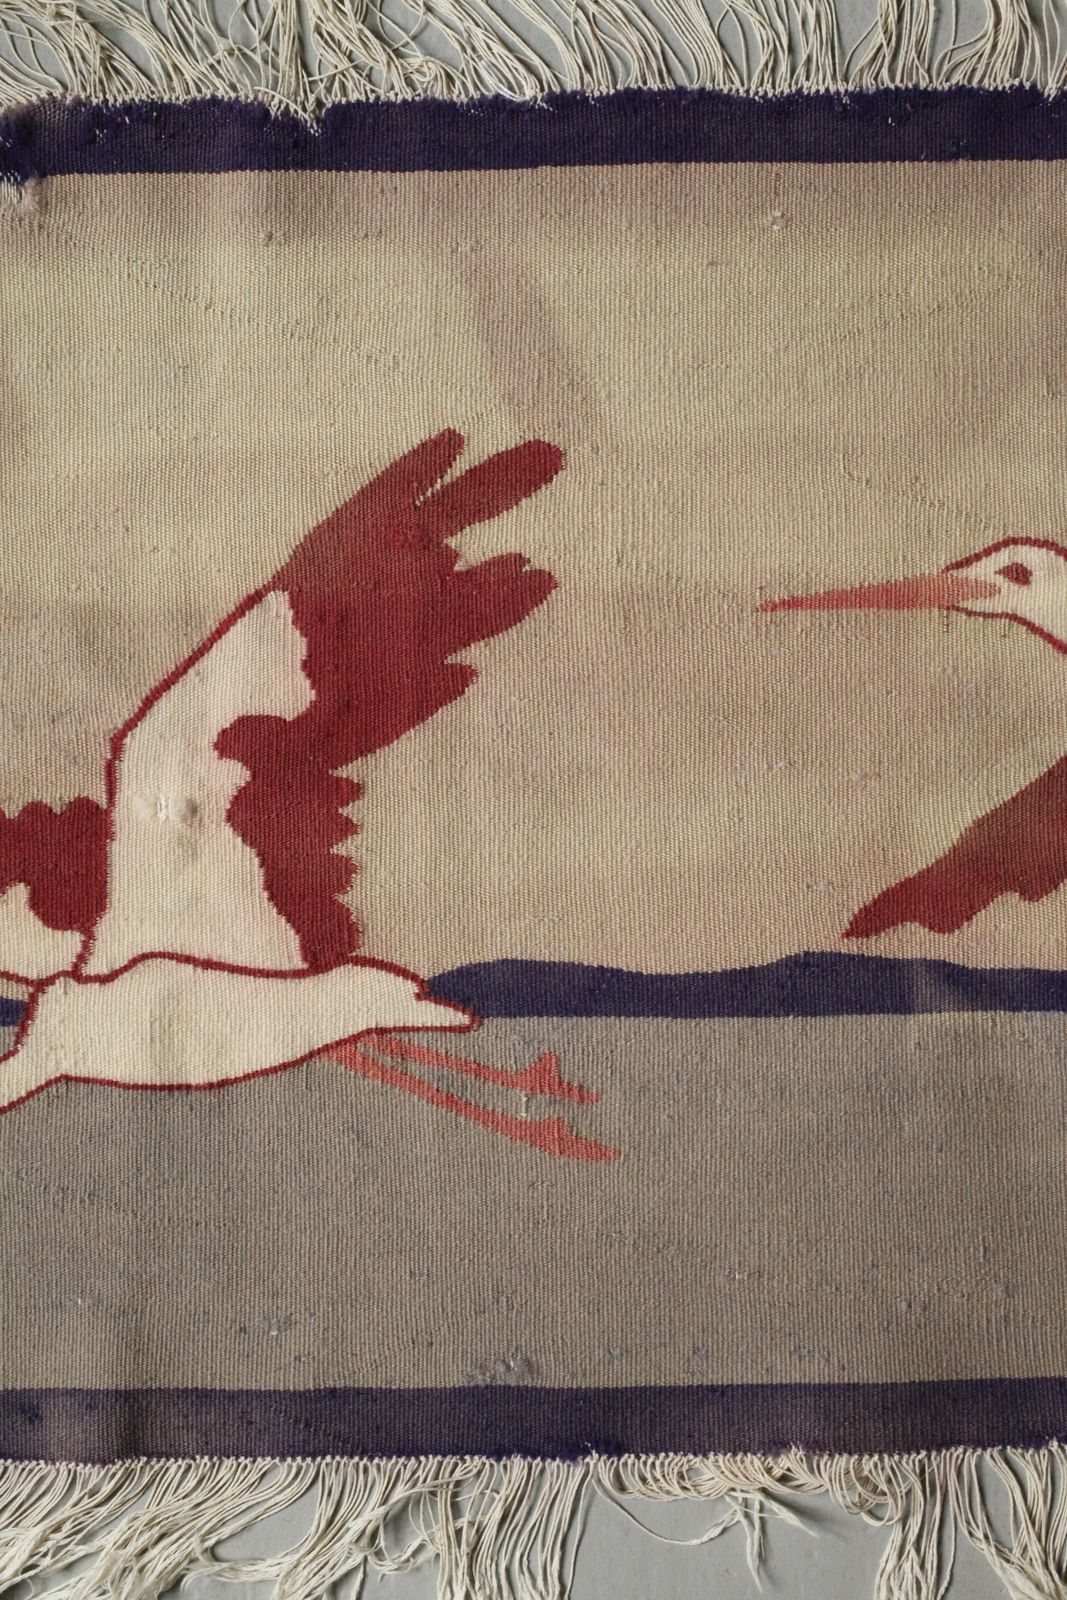 Art Weaving School Scherrebek Wall Hanging Three Storks - Image 10 of 12